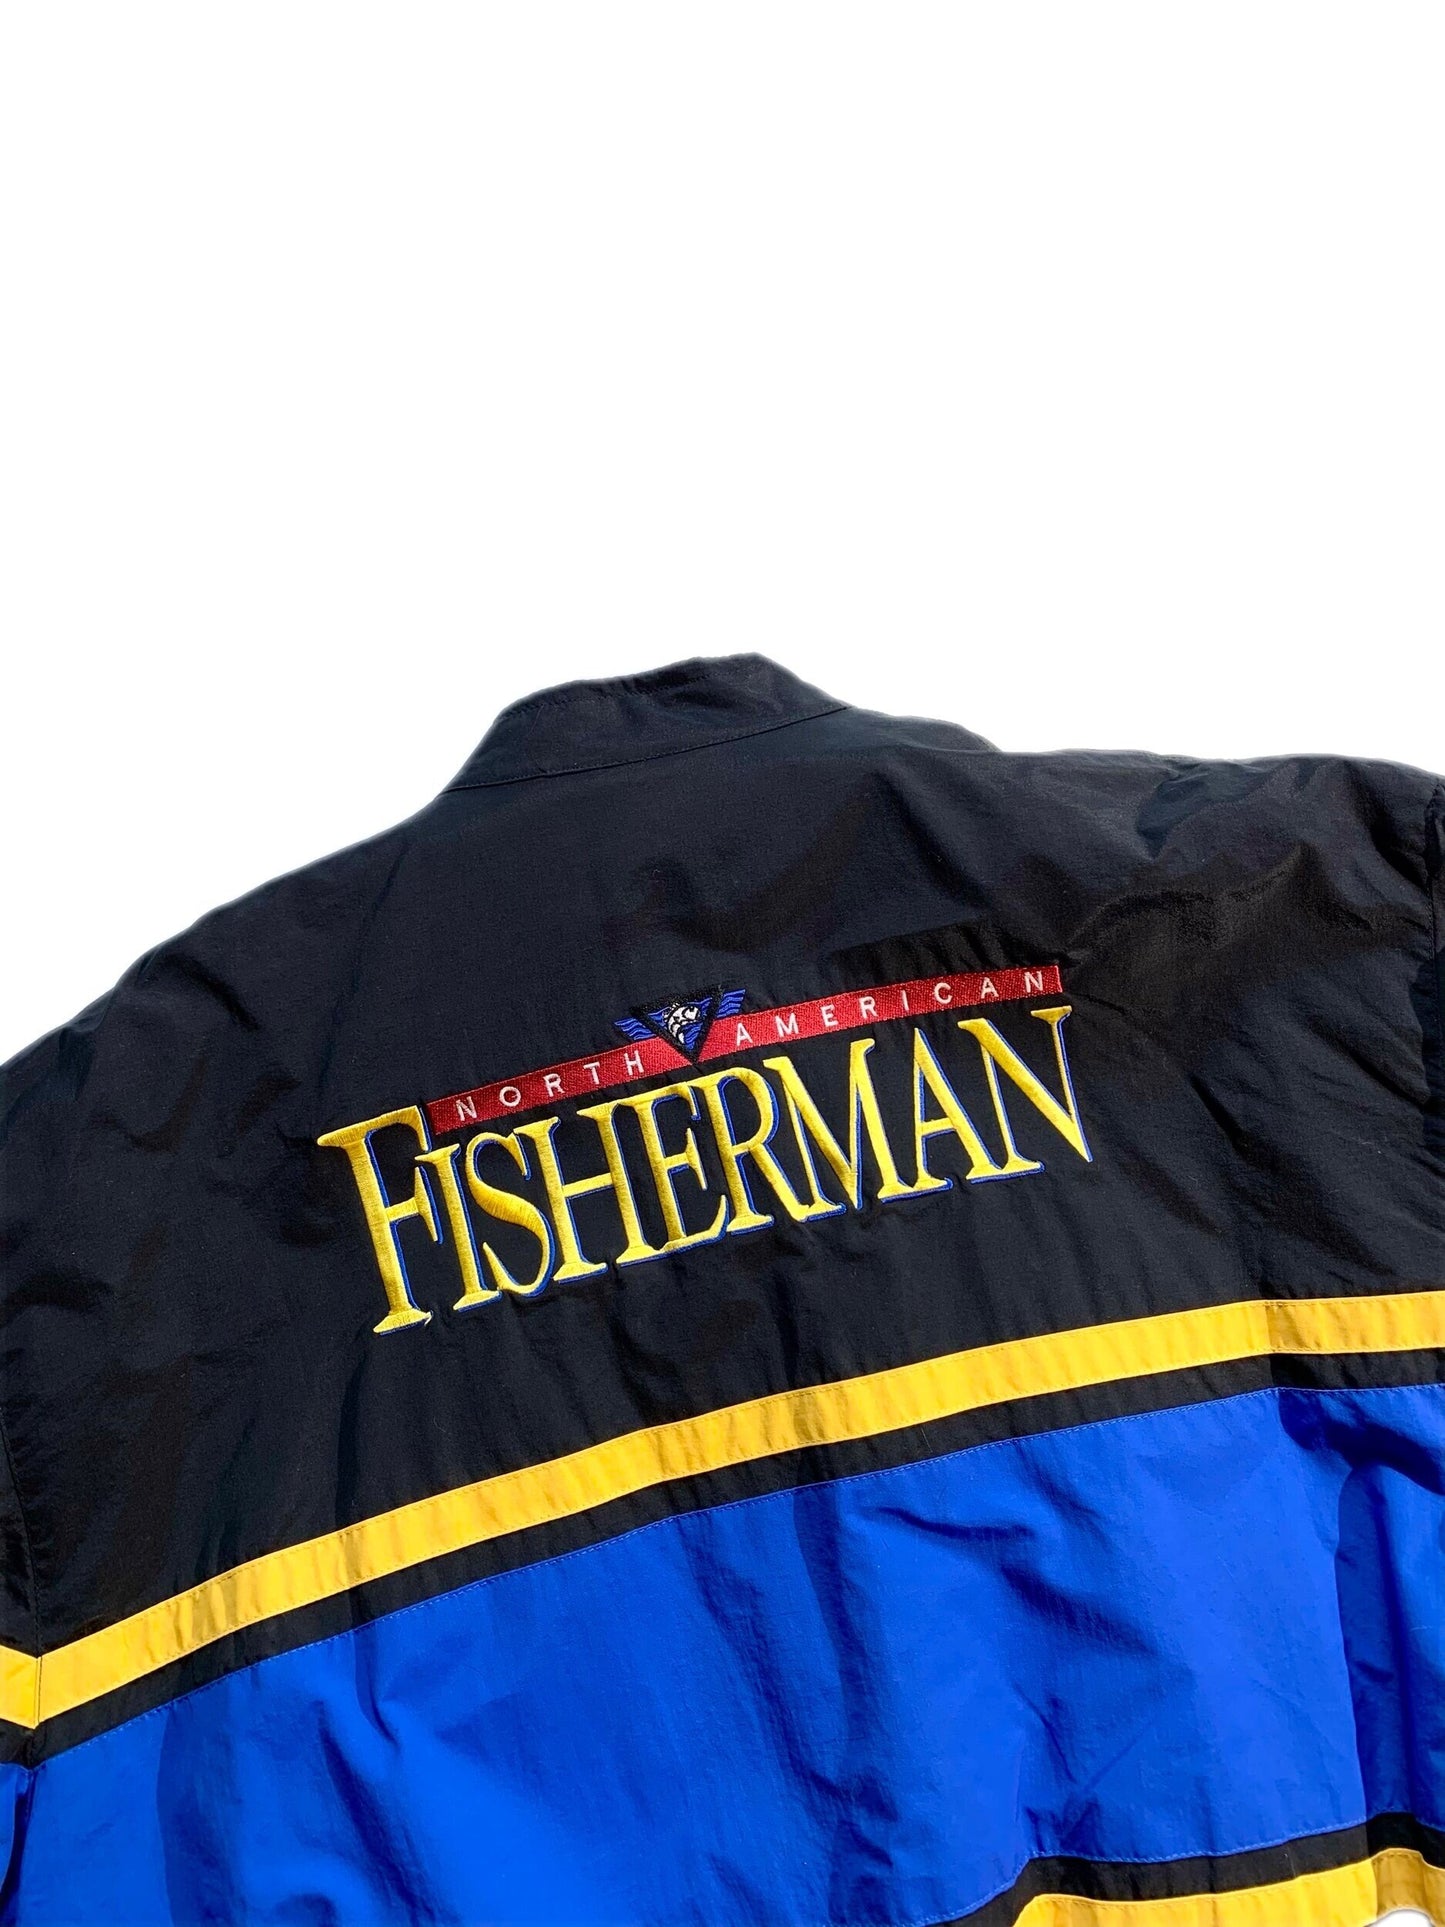 Vintage North American Fisherman Jacket